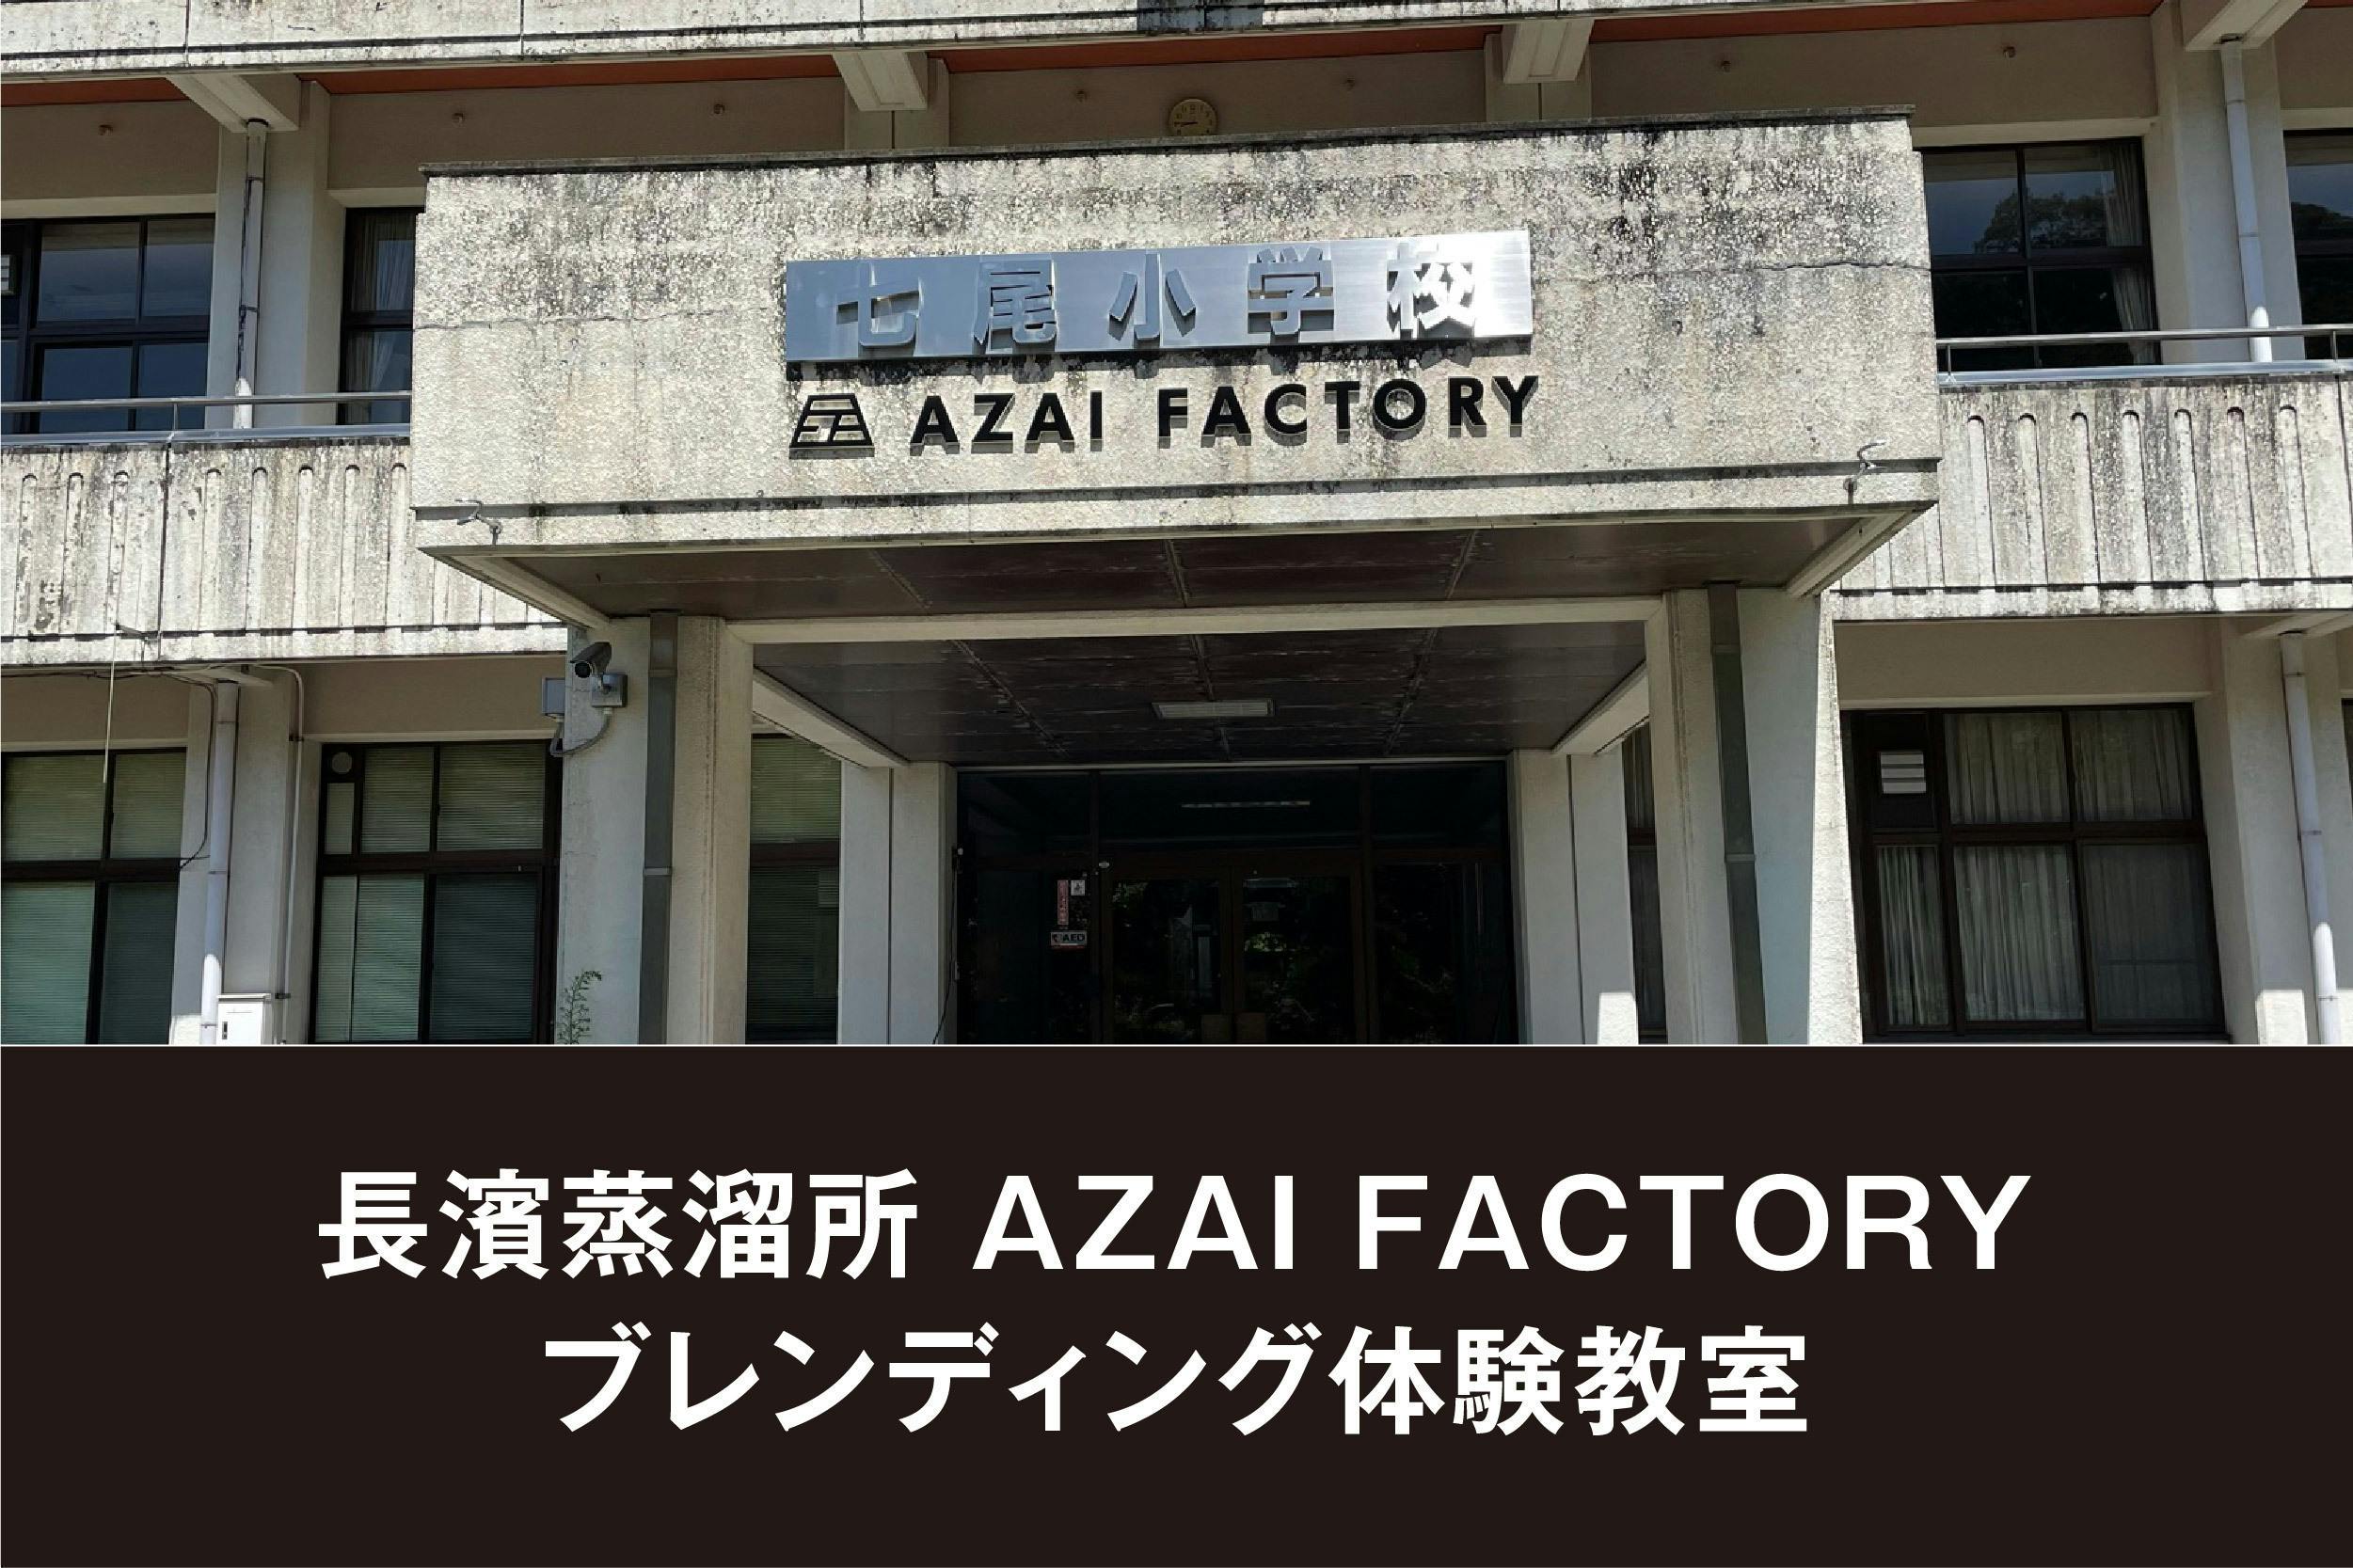 AZAI FACTORY Edition 限定300クラウドファンディング返礼品 - ウイスキー